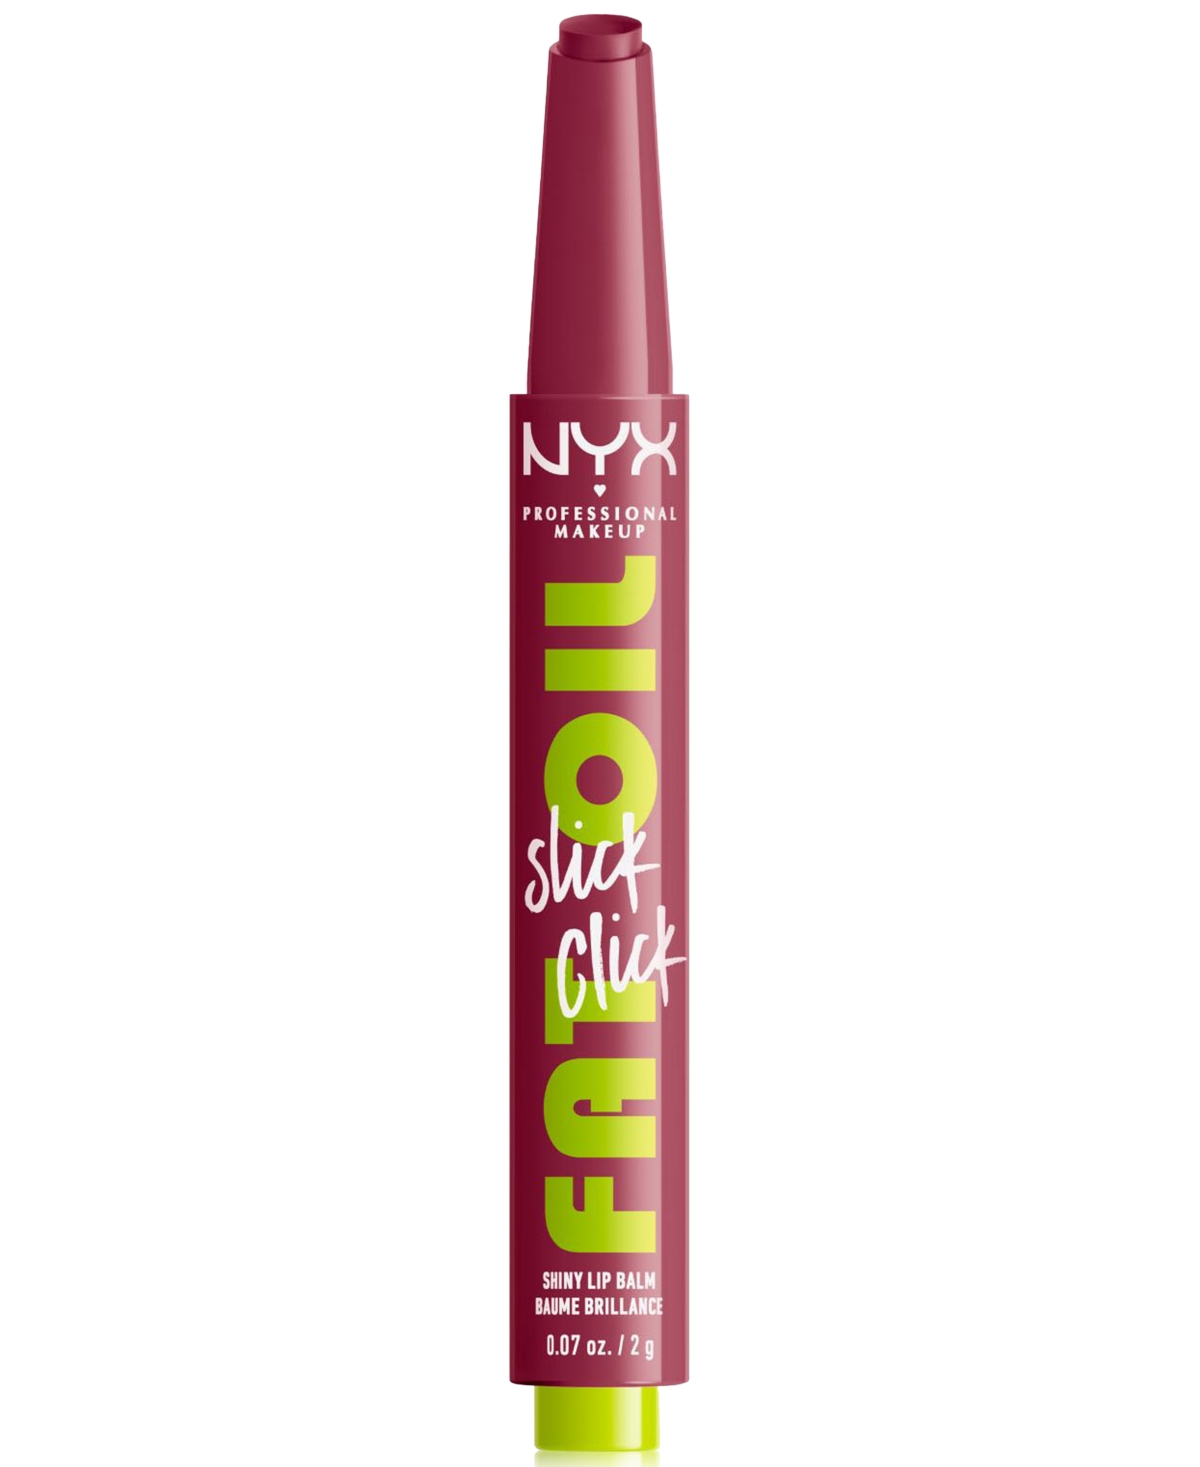 Nyx Professional Makeup Fat Oil Slick Click In That's Major (mid-tone Mauve)